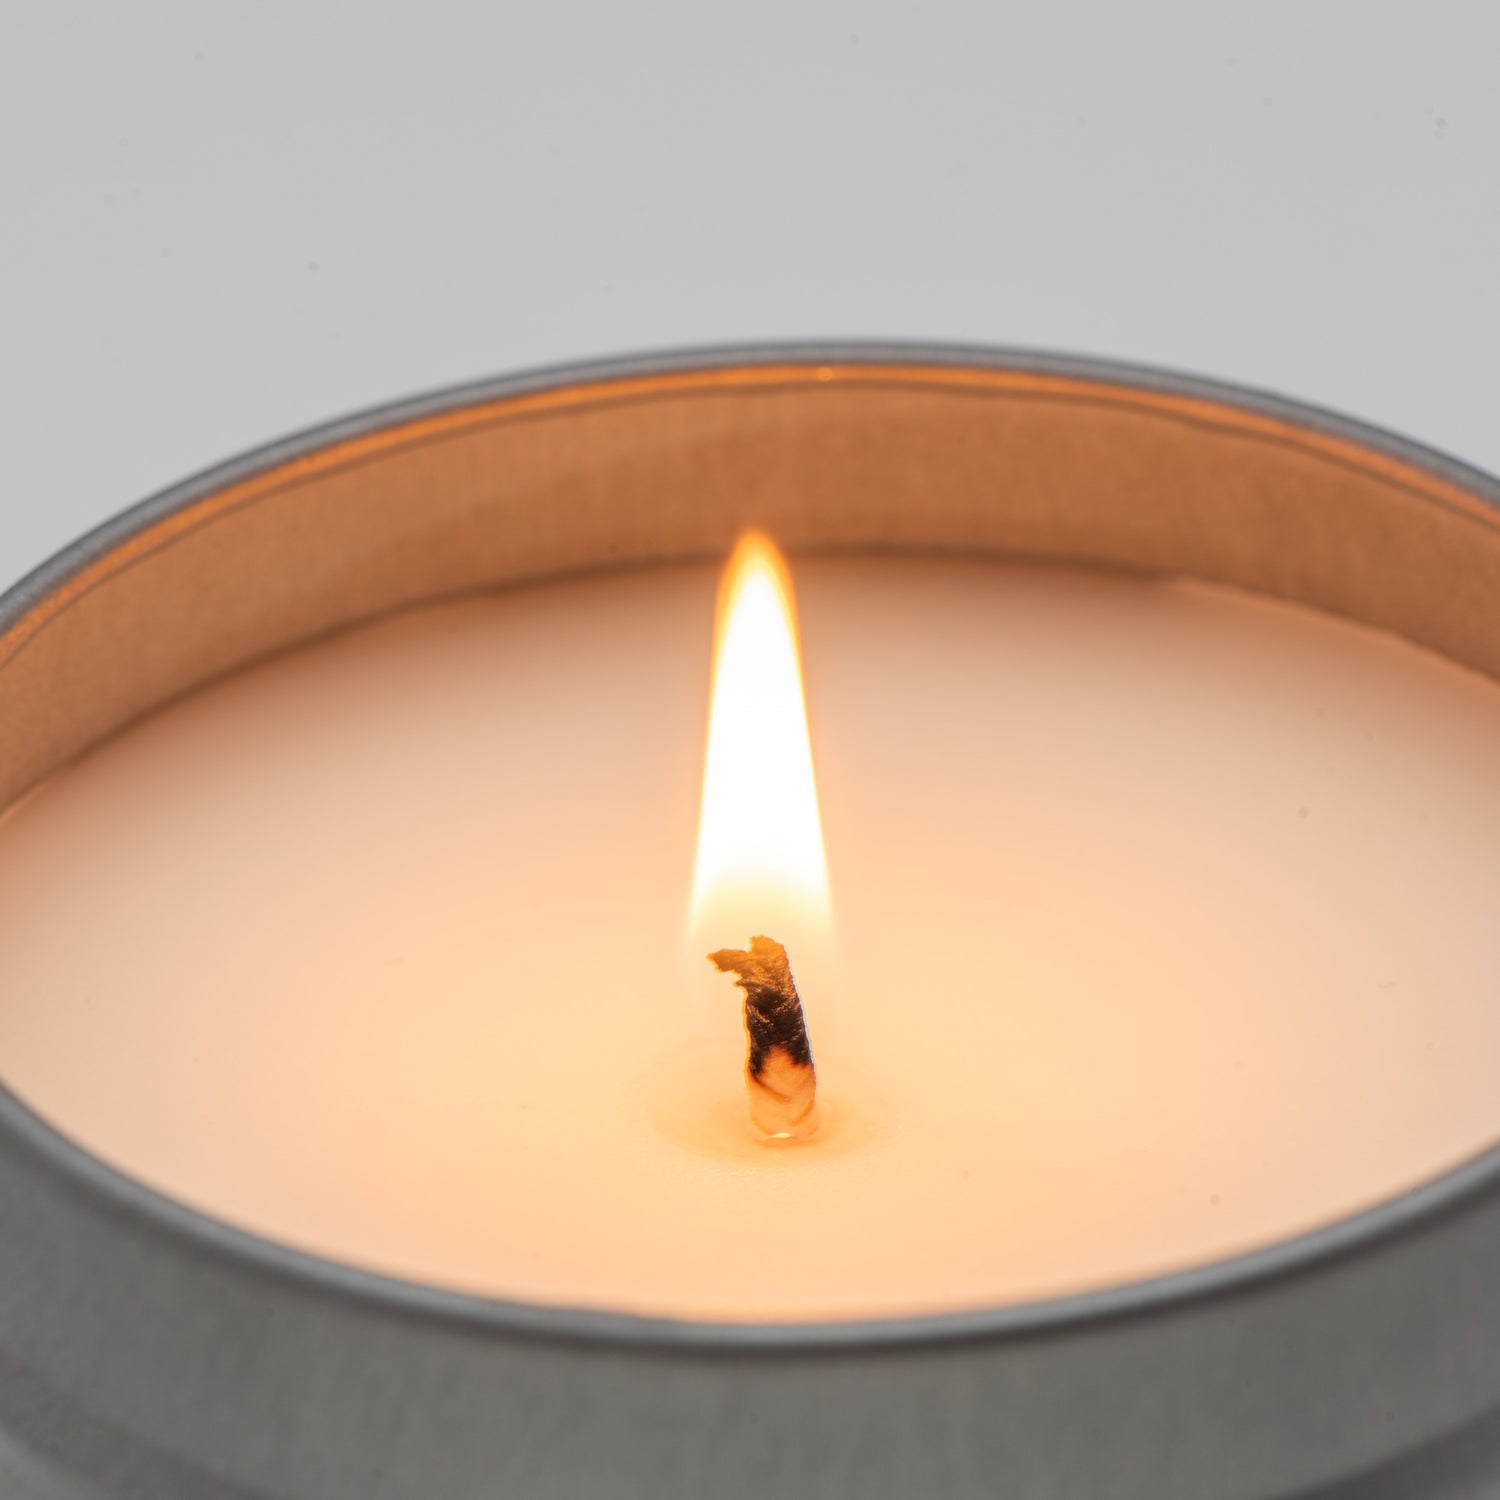 Tin candle burning